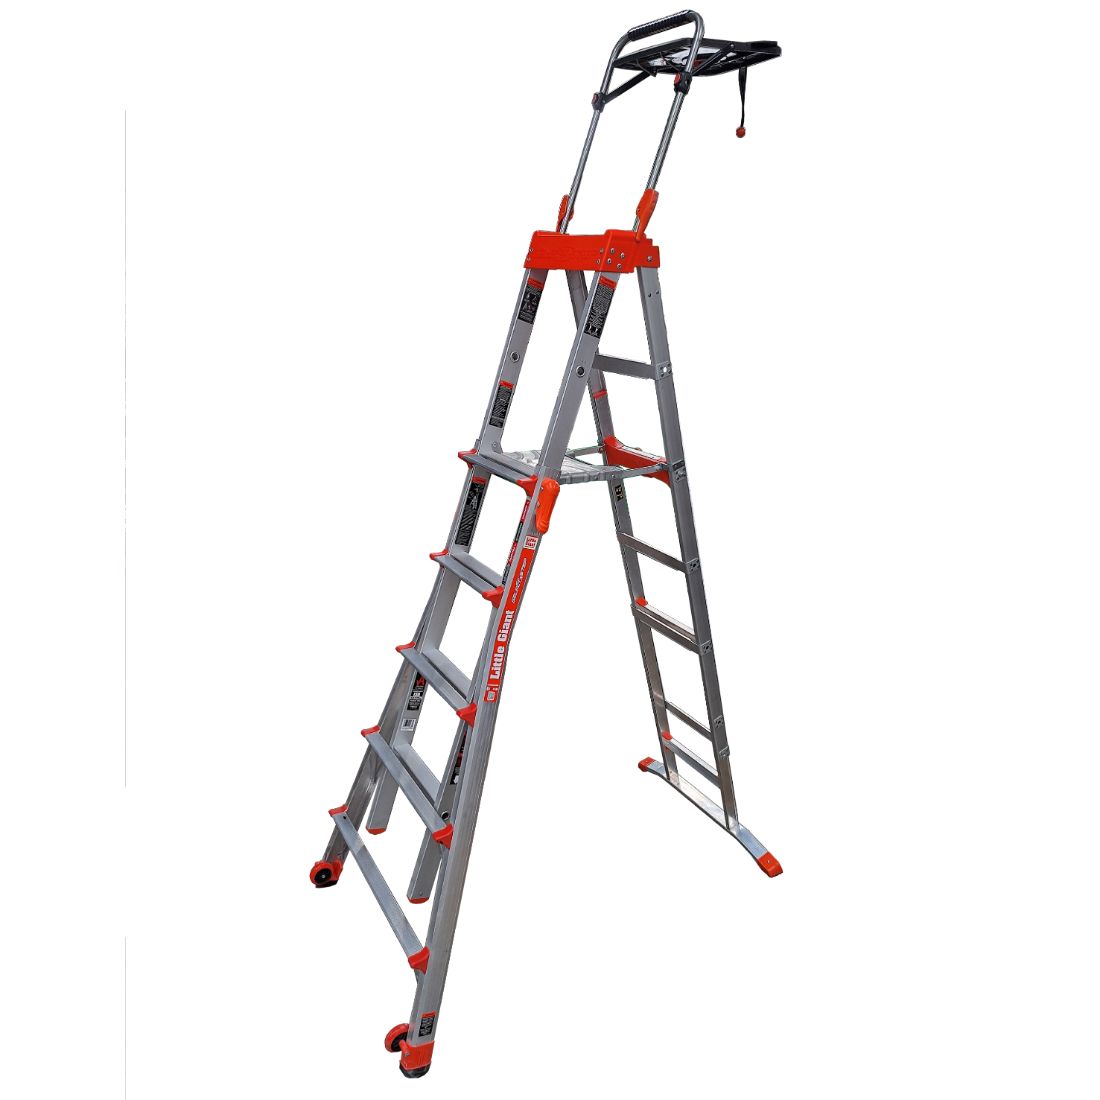 Adjustable Platform Step Ladder